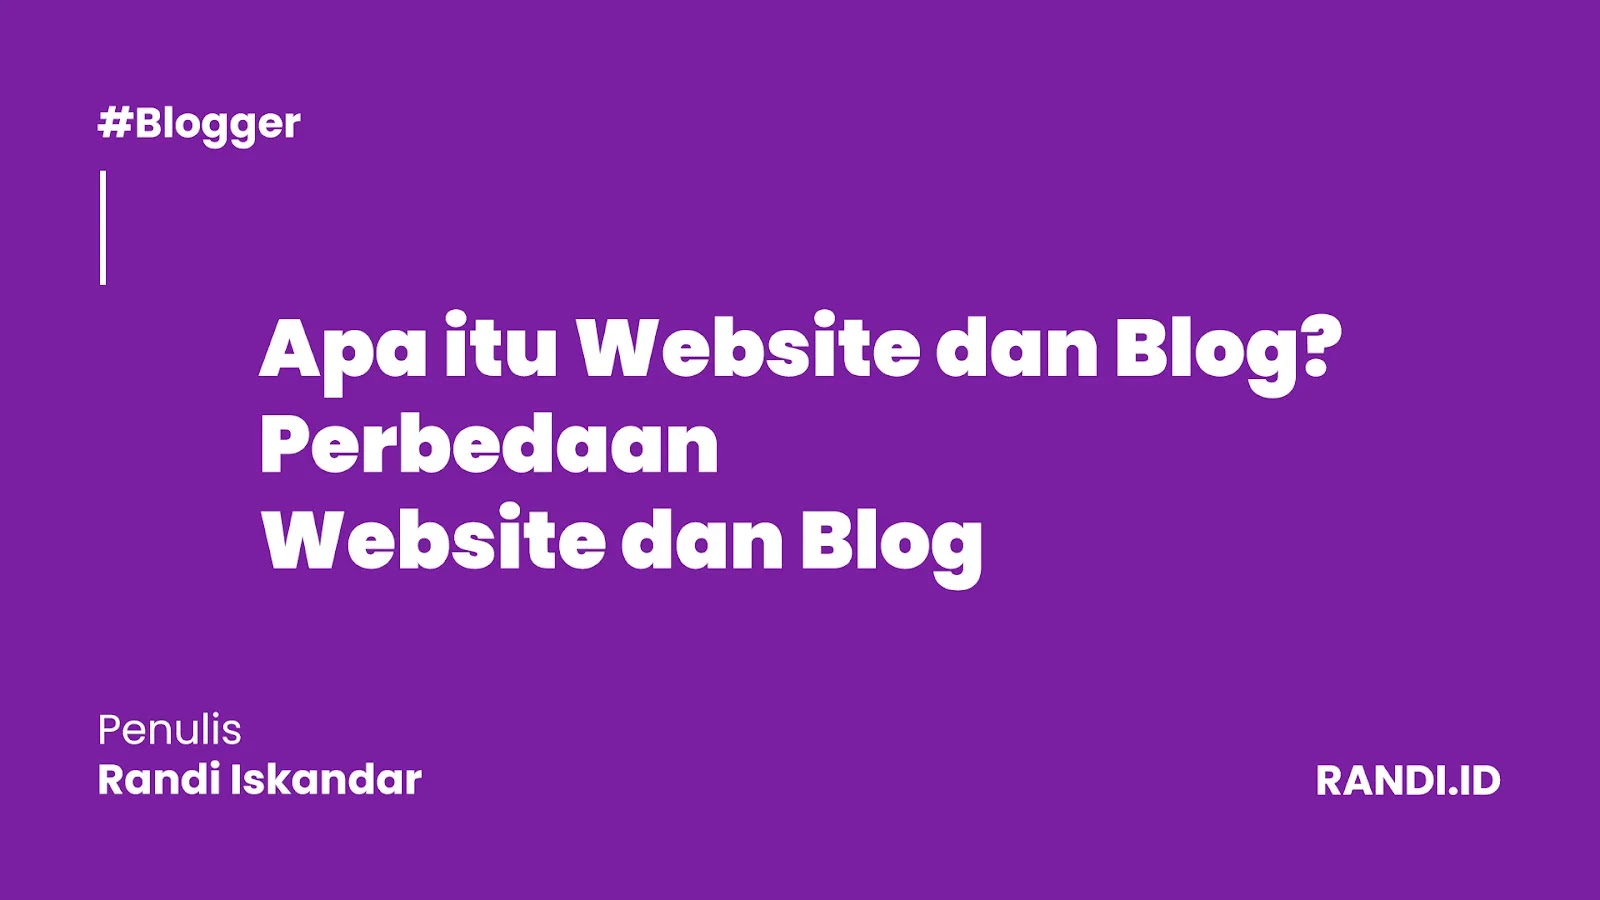 Pengertian dan Perbedaan Website dan Blog